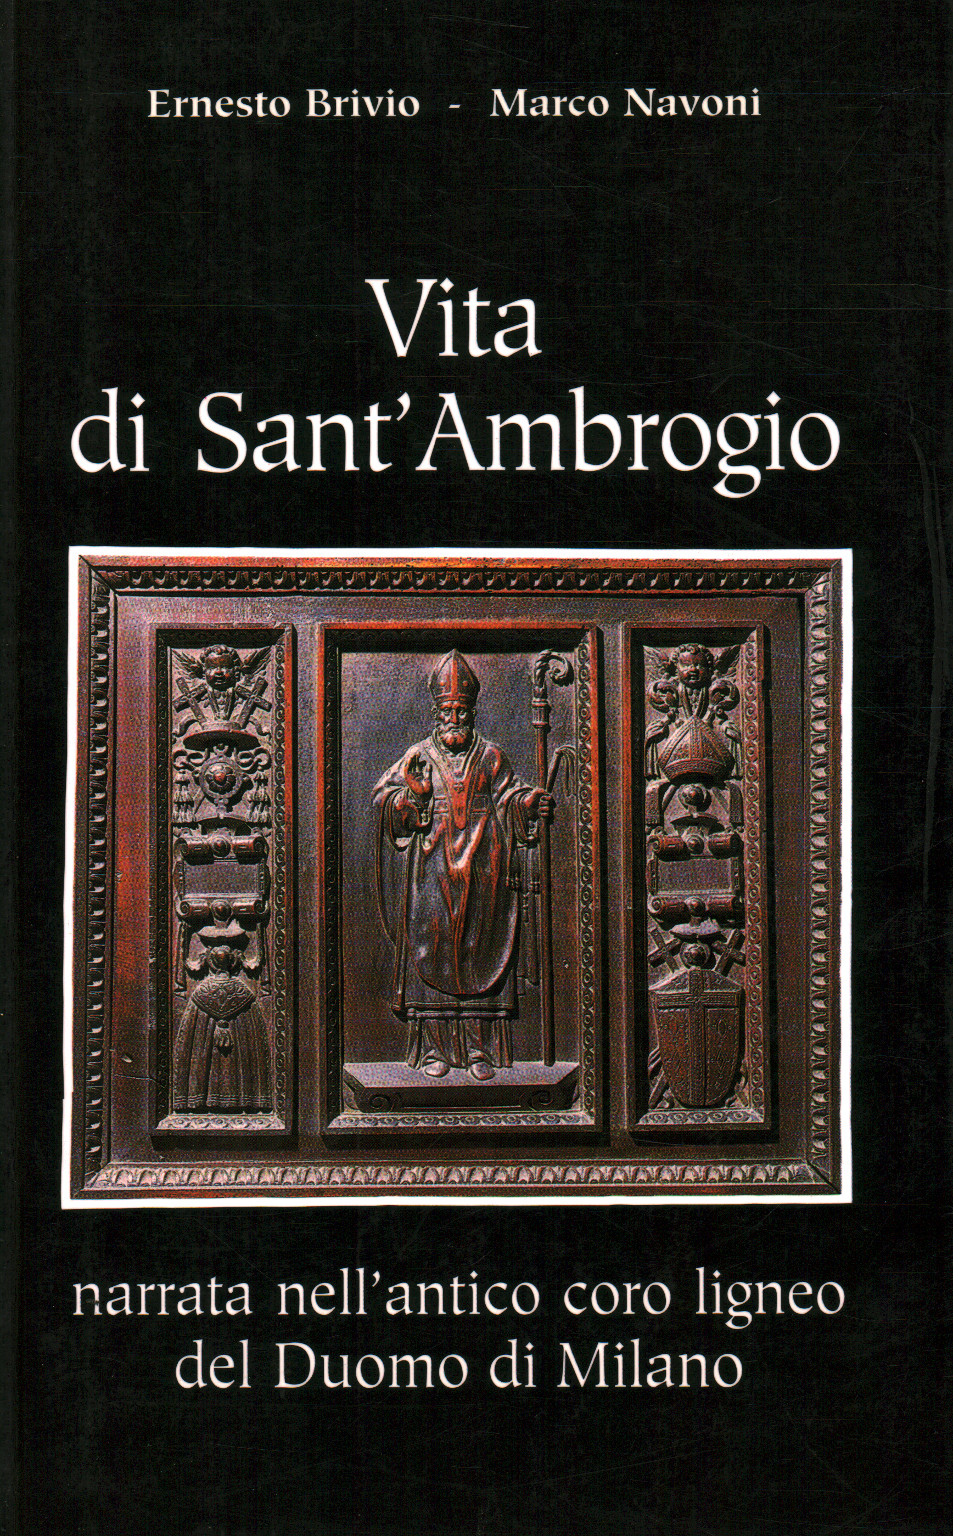 Vita di Sant'Ambrogio, Ernesto Brivio Marco Navoni